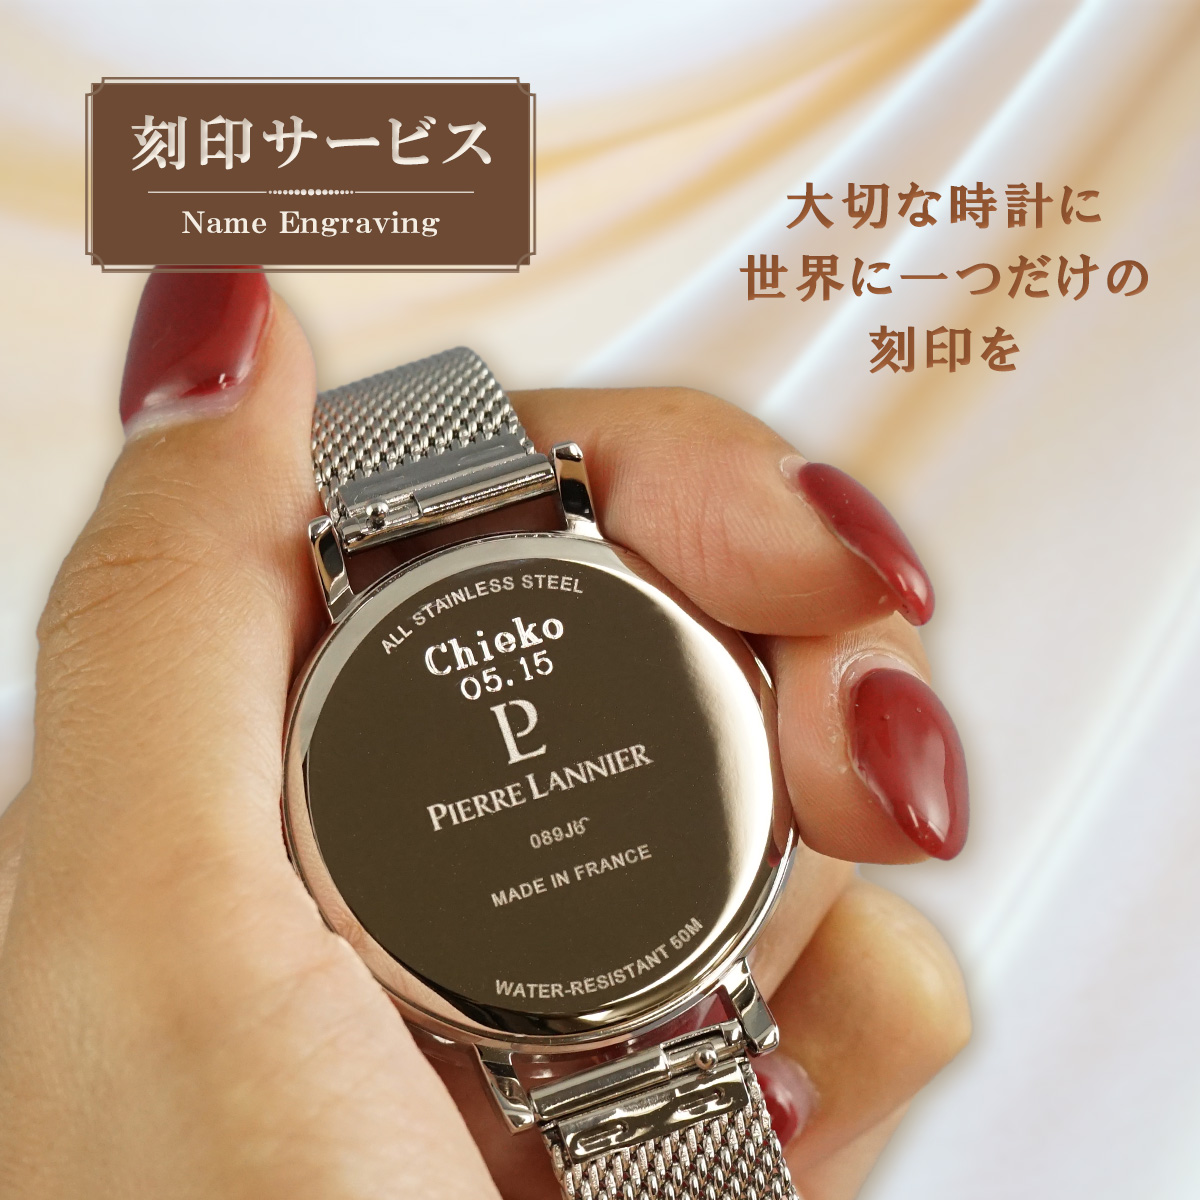 おすすめ 日本正規代理店品 大切な記念に 世界で１つだけのプレゼントを ピエールラニエ 刻印サービス 世界で一つの腕時計 贈り物 お祝い ペアウォッチ 誕生日 超特価 プレゼント 名入れ